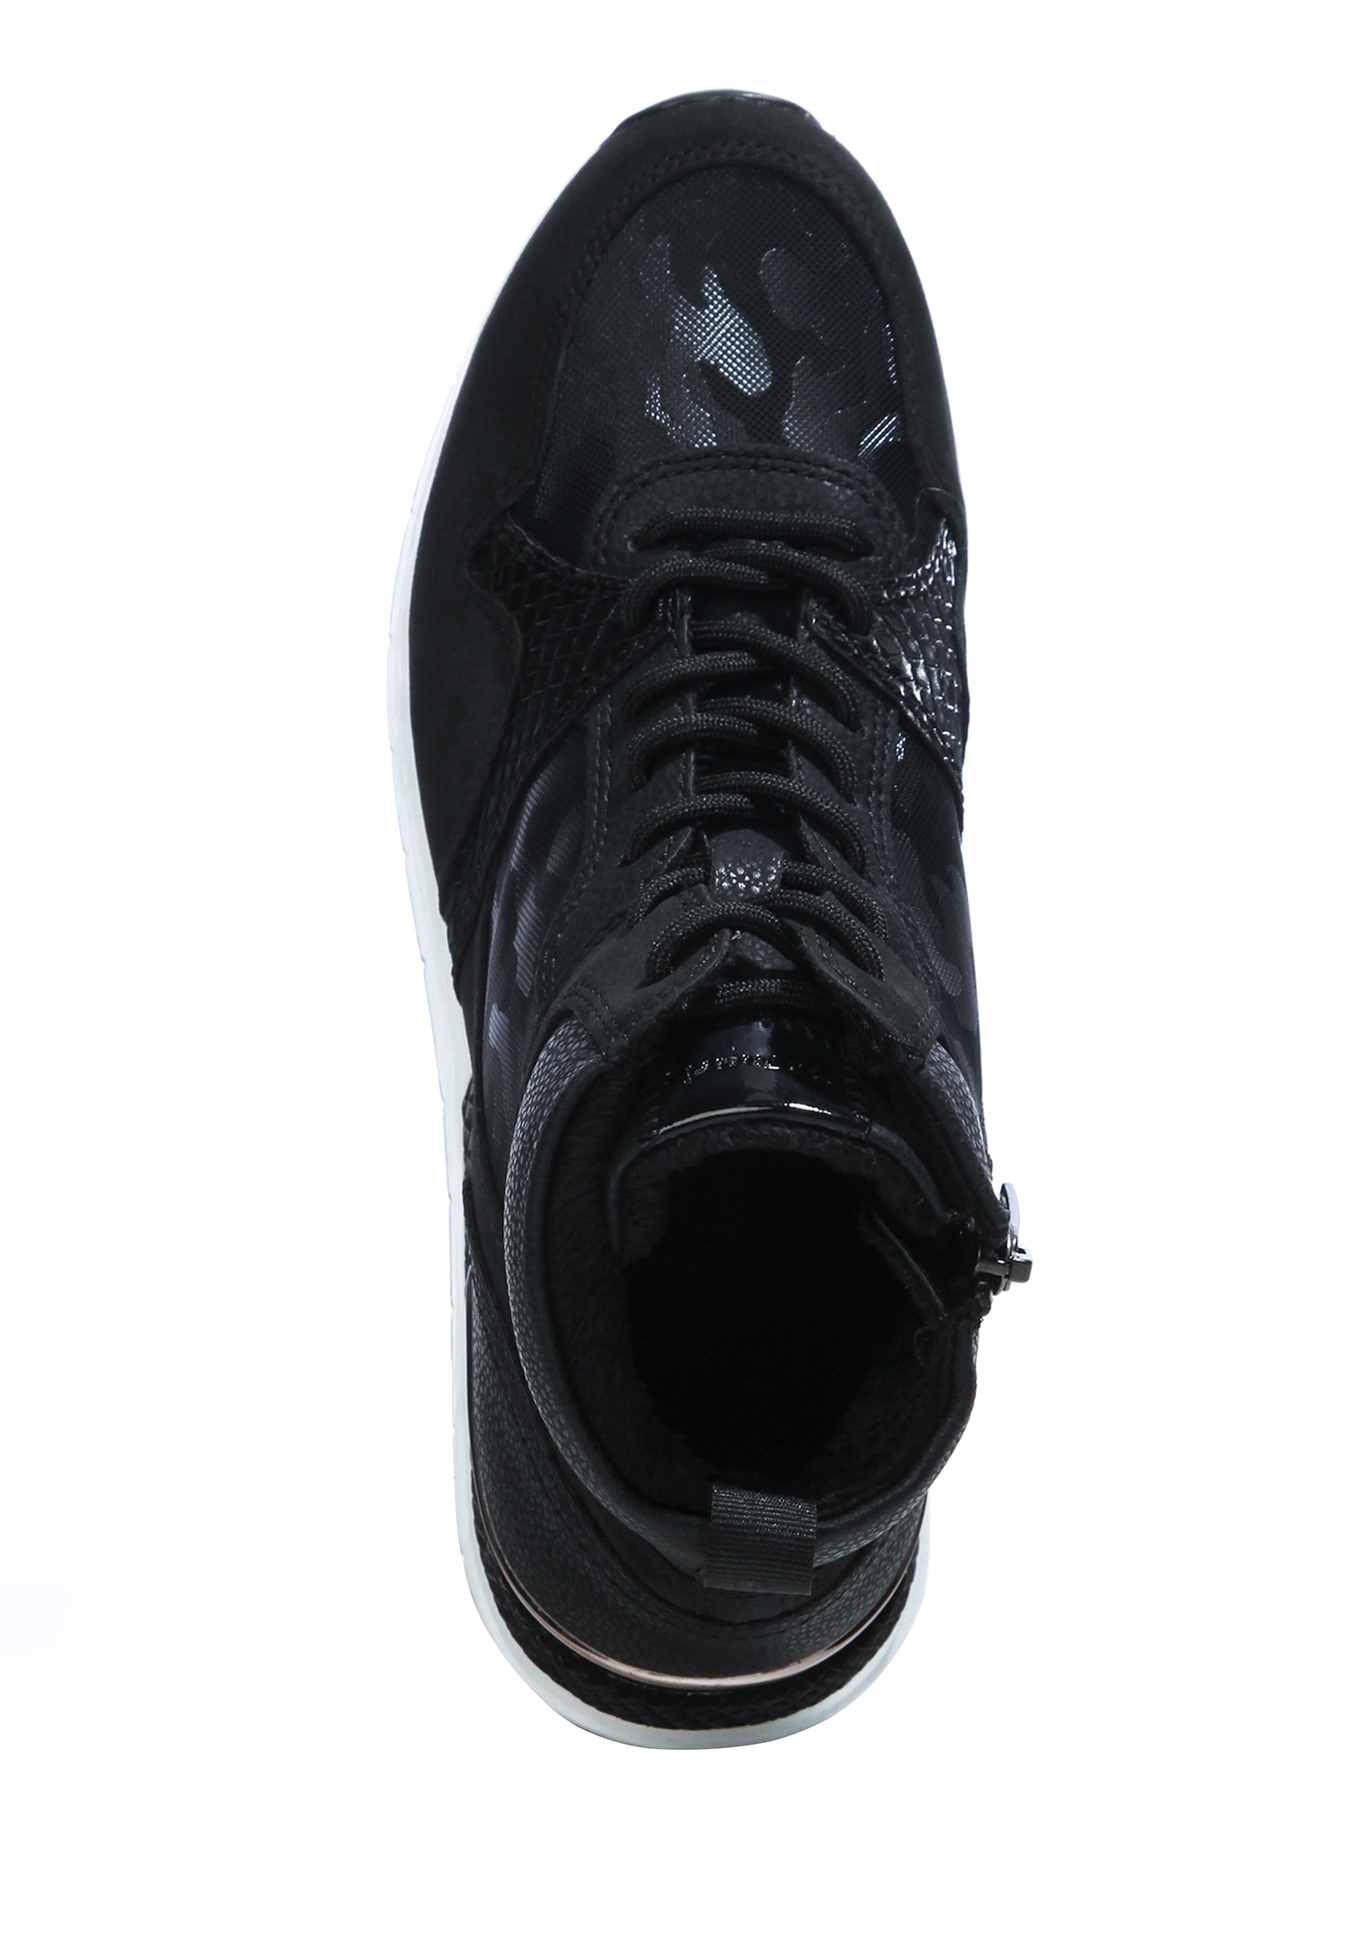 Ботинки женские "Флер" Tamaris, размер 36, цвет черный - фото 8